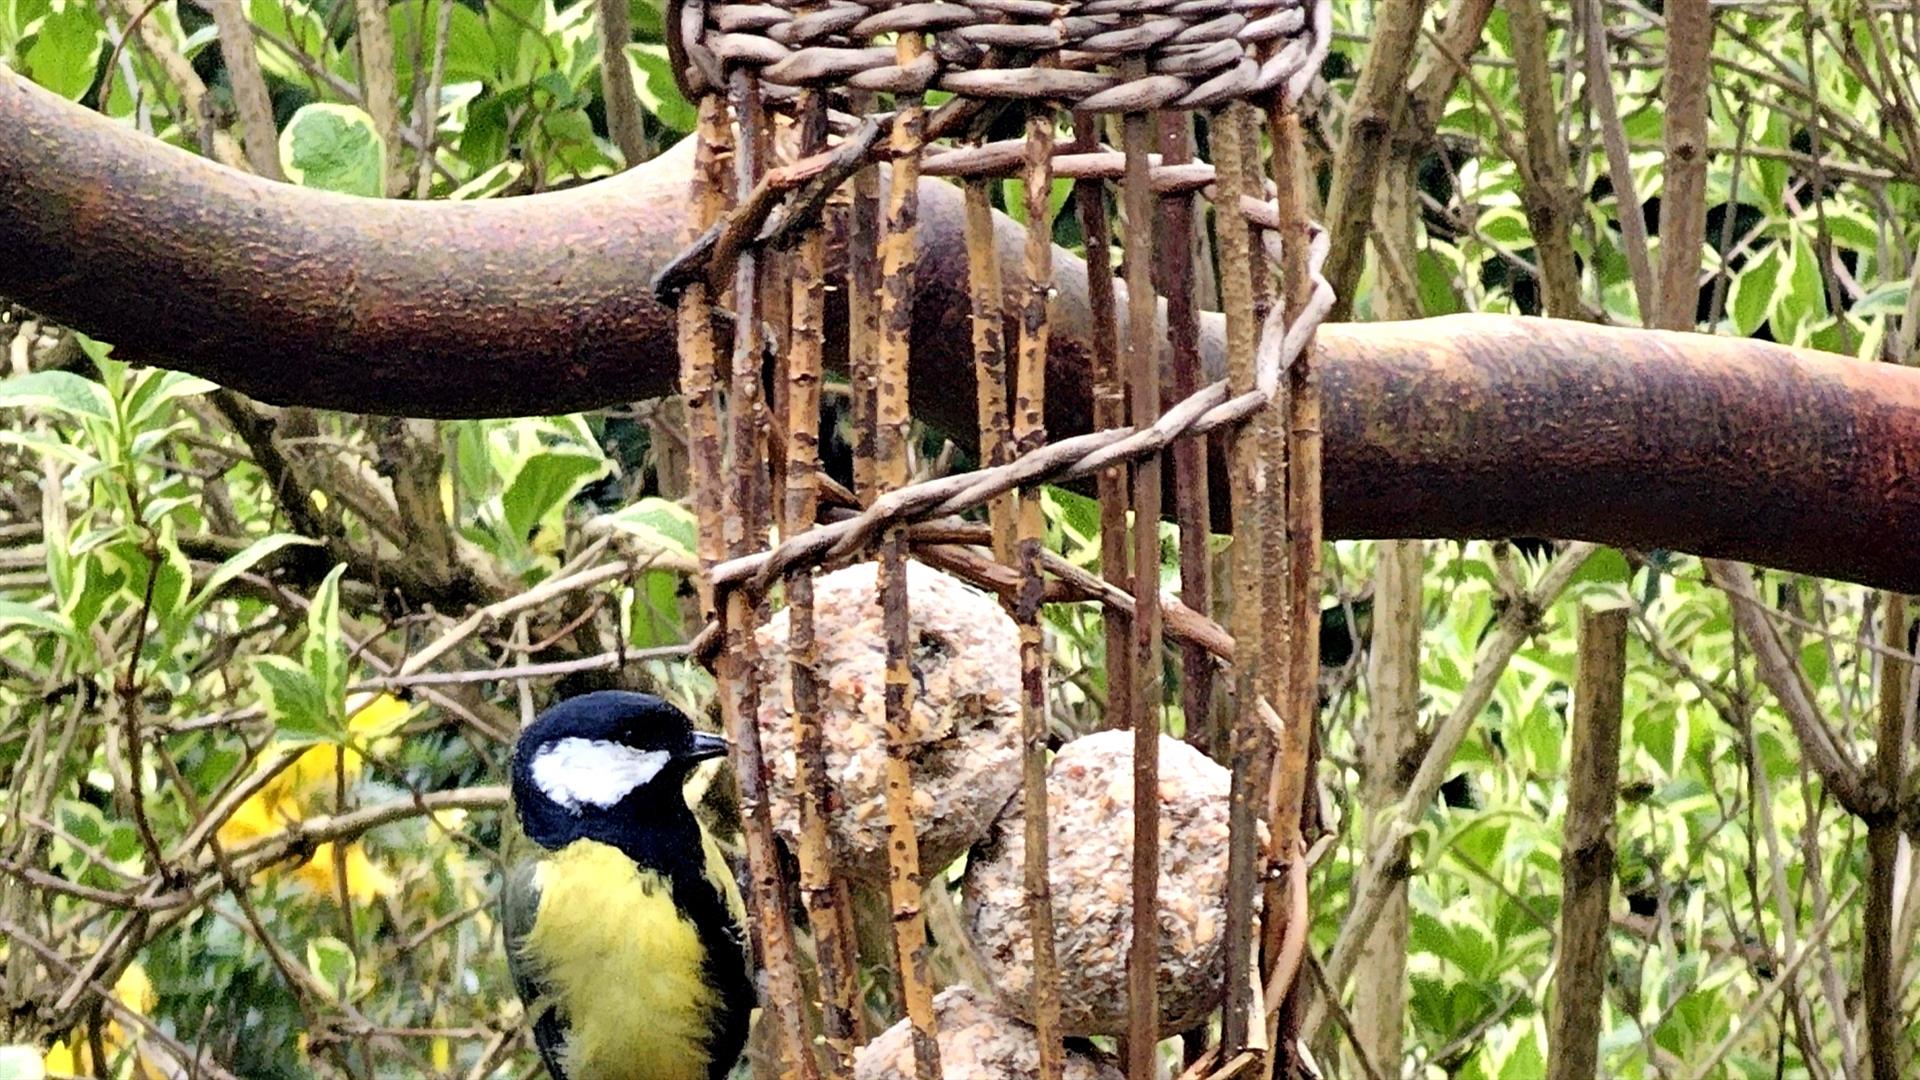 A bird enjoying treats from a willow feeder